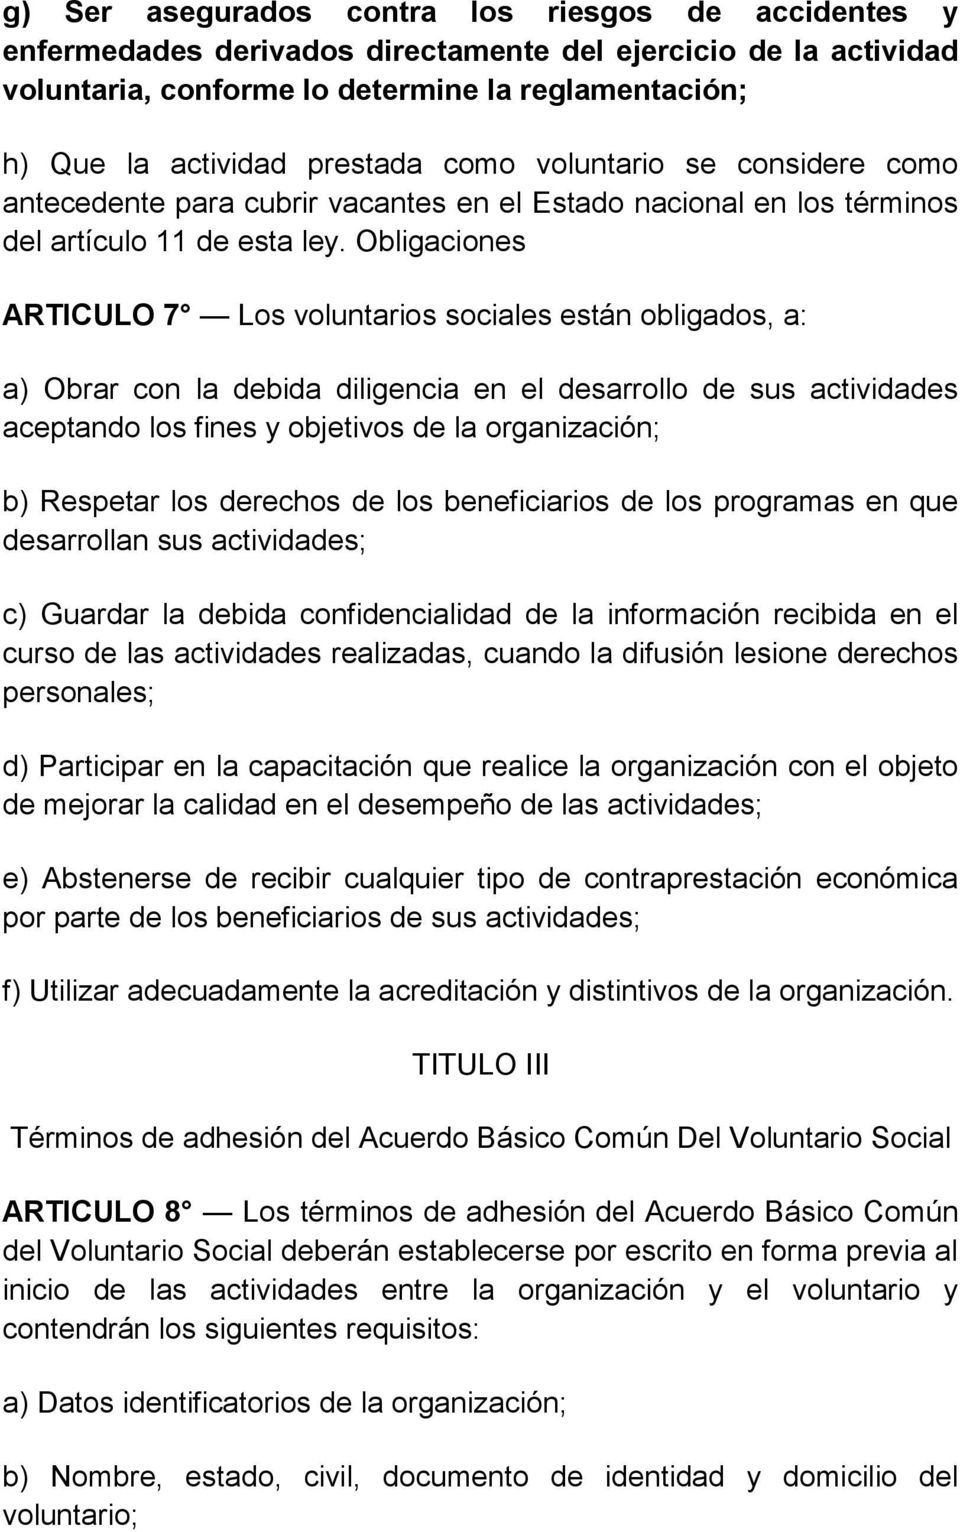 Obligaciones ARTICULO 7 Los voluntarios sociales están obligados, a: a) Obrar con la debida diligencia en el desarrollo de sus actividades aceptando los fines y objetivos de la organización; b)